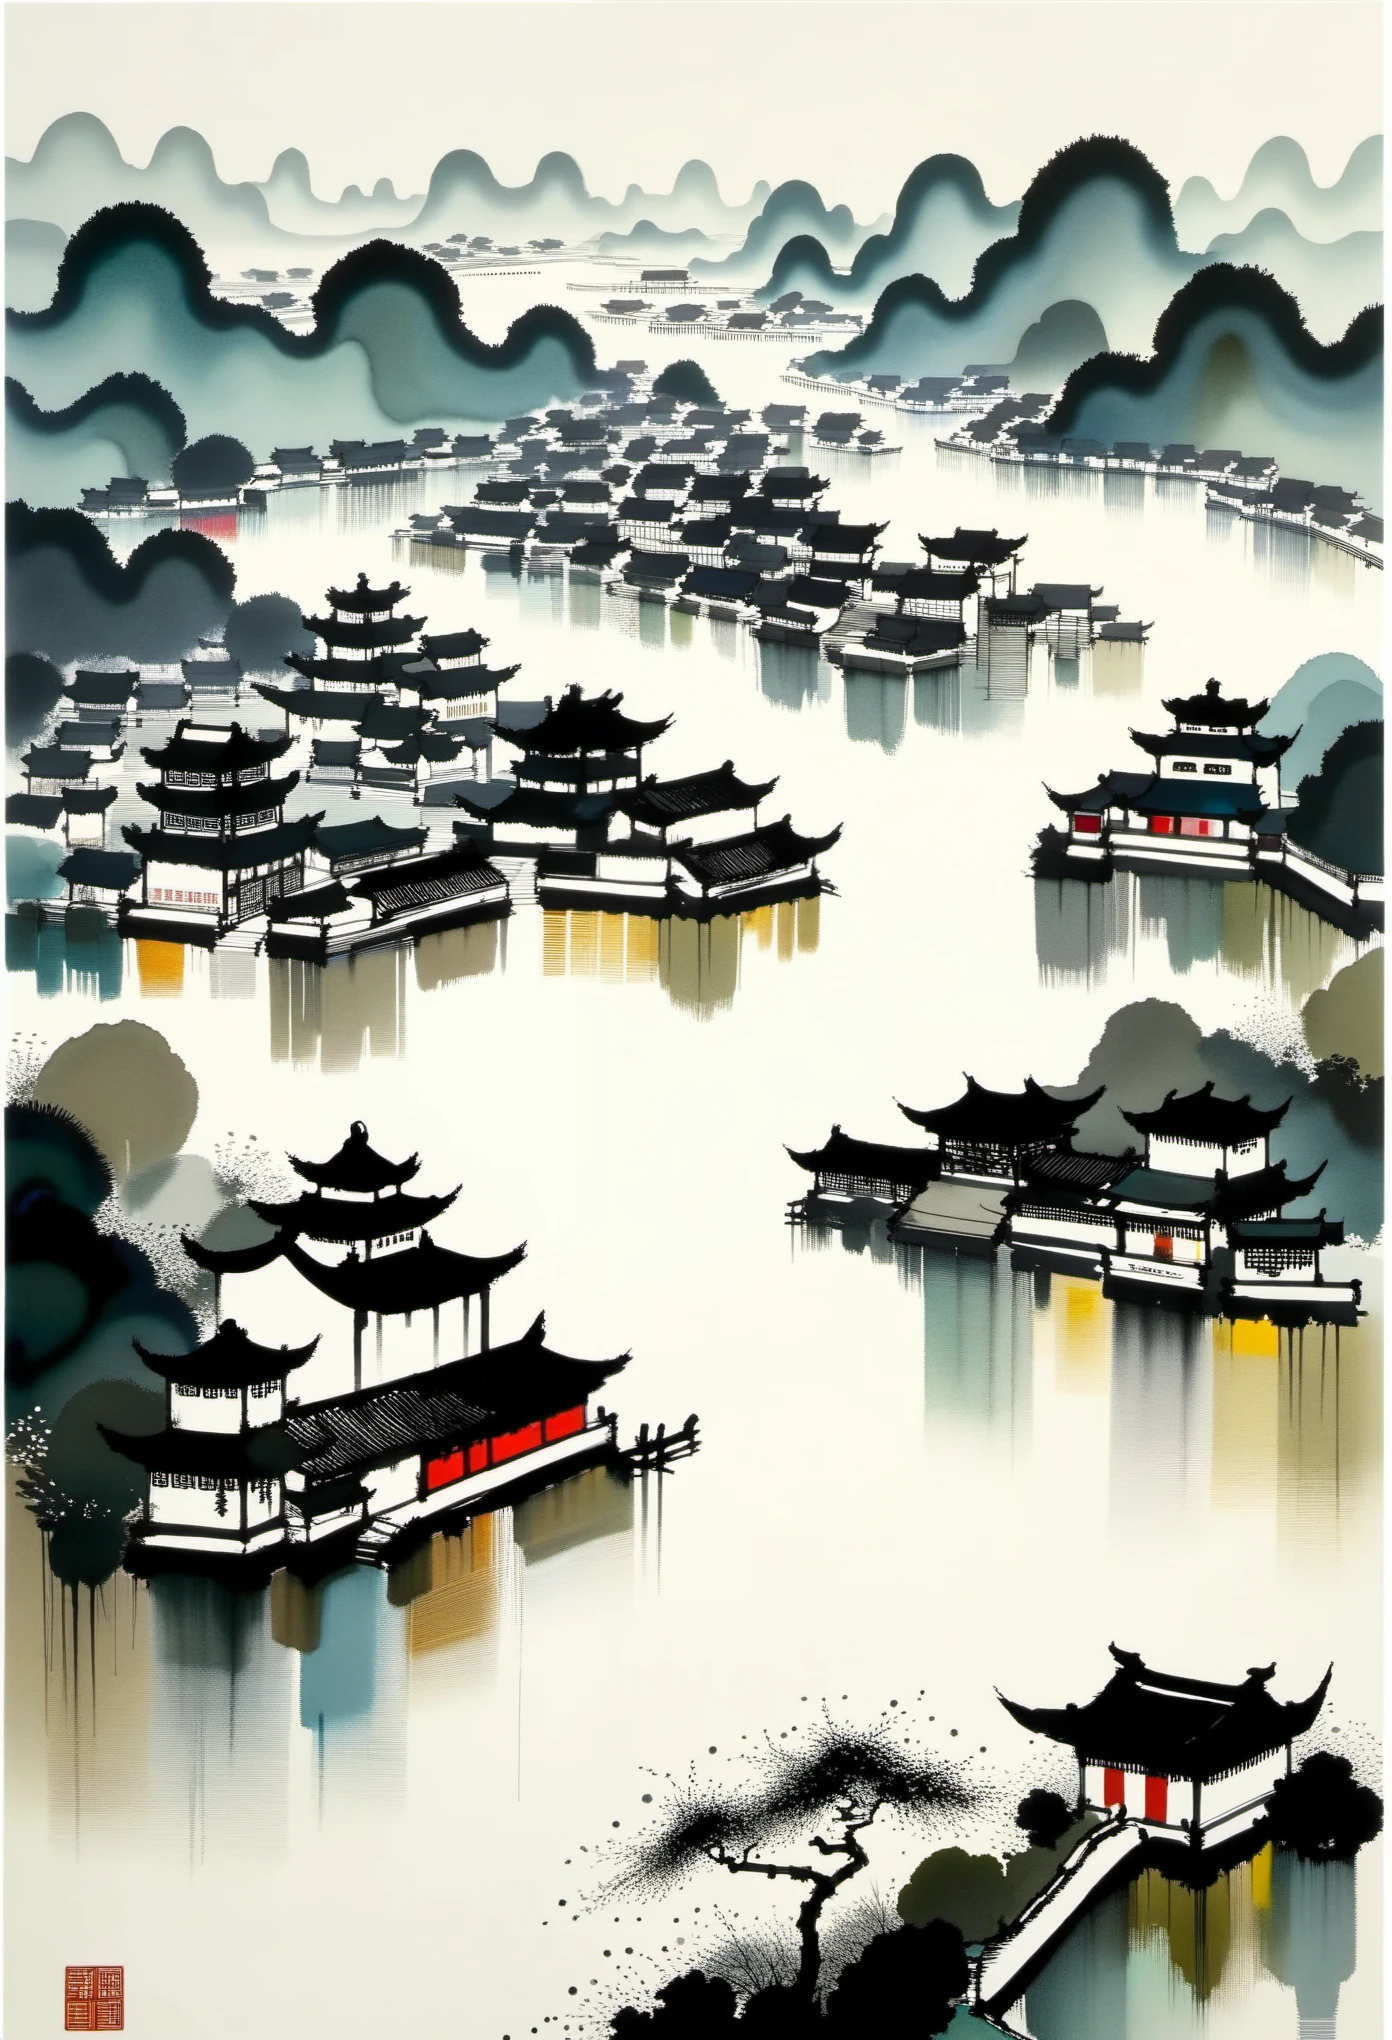 几何抽象水墨，描述江南园林建筑群，吴冠中的风格是将中国传统水墨技法与西方绘画理念相融合的艺术表达. 它的特点是对传统主题的现代诠释, 通过色彩和线条创造独特的视觉效果.